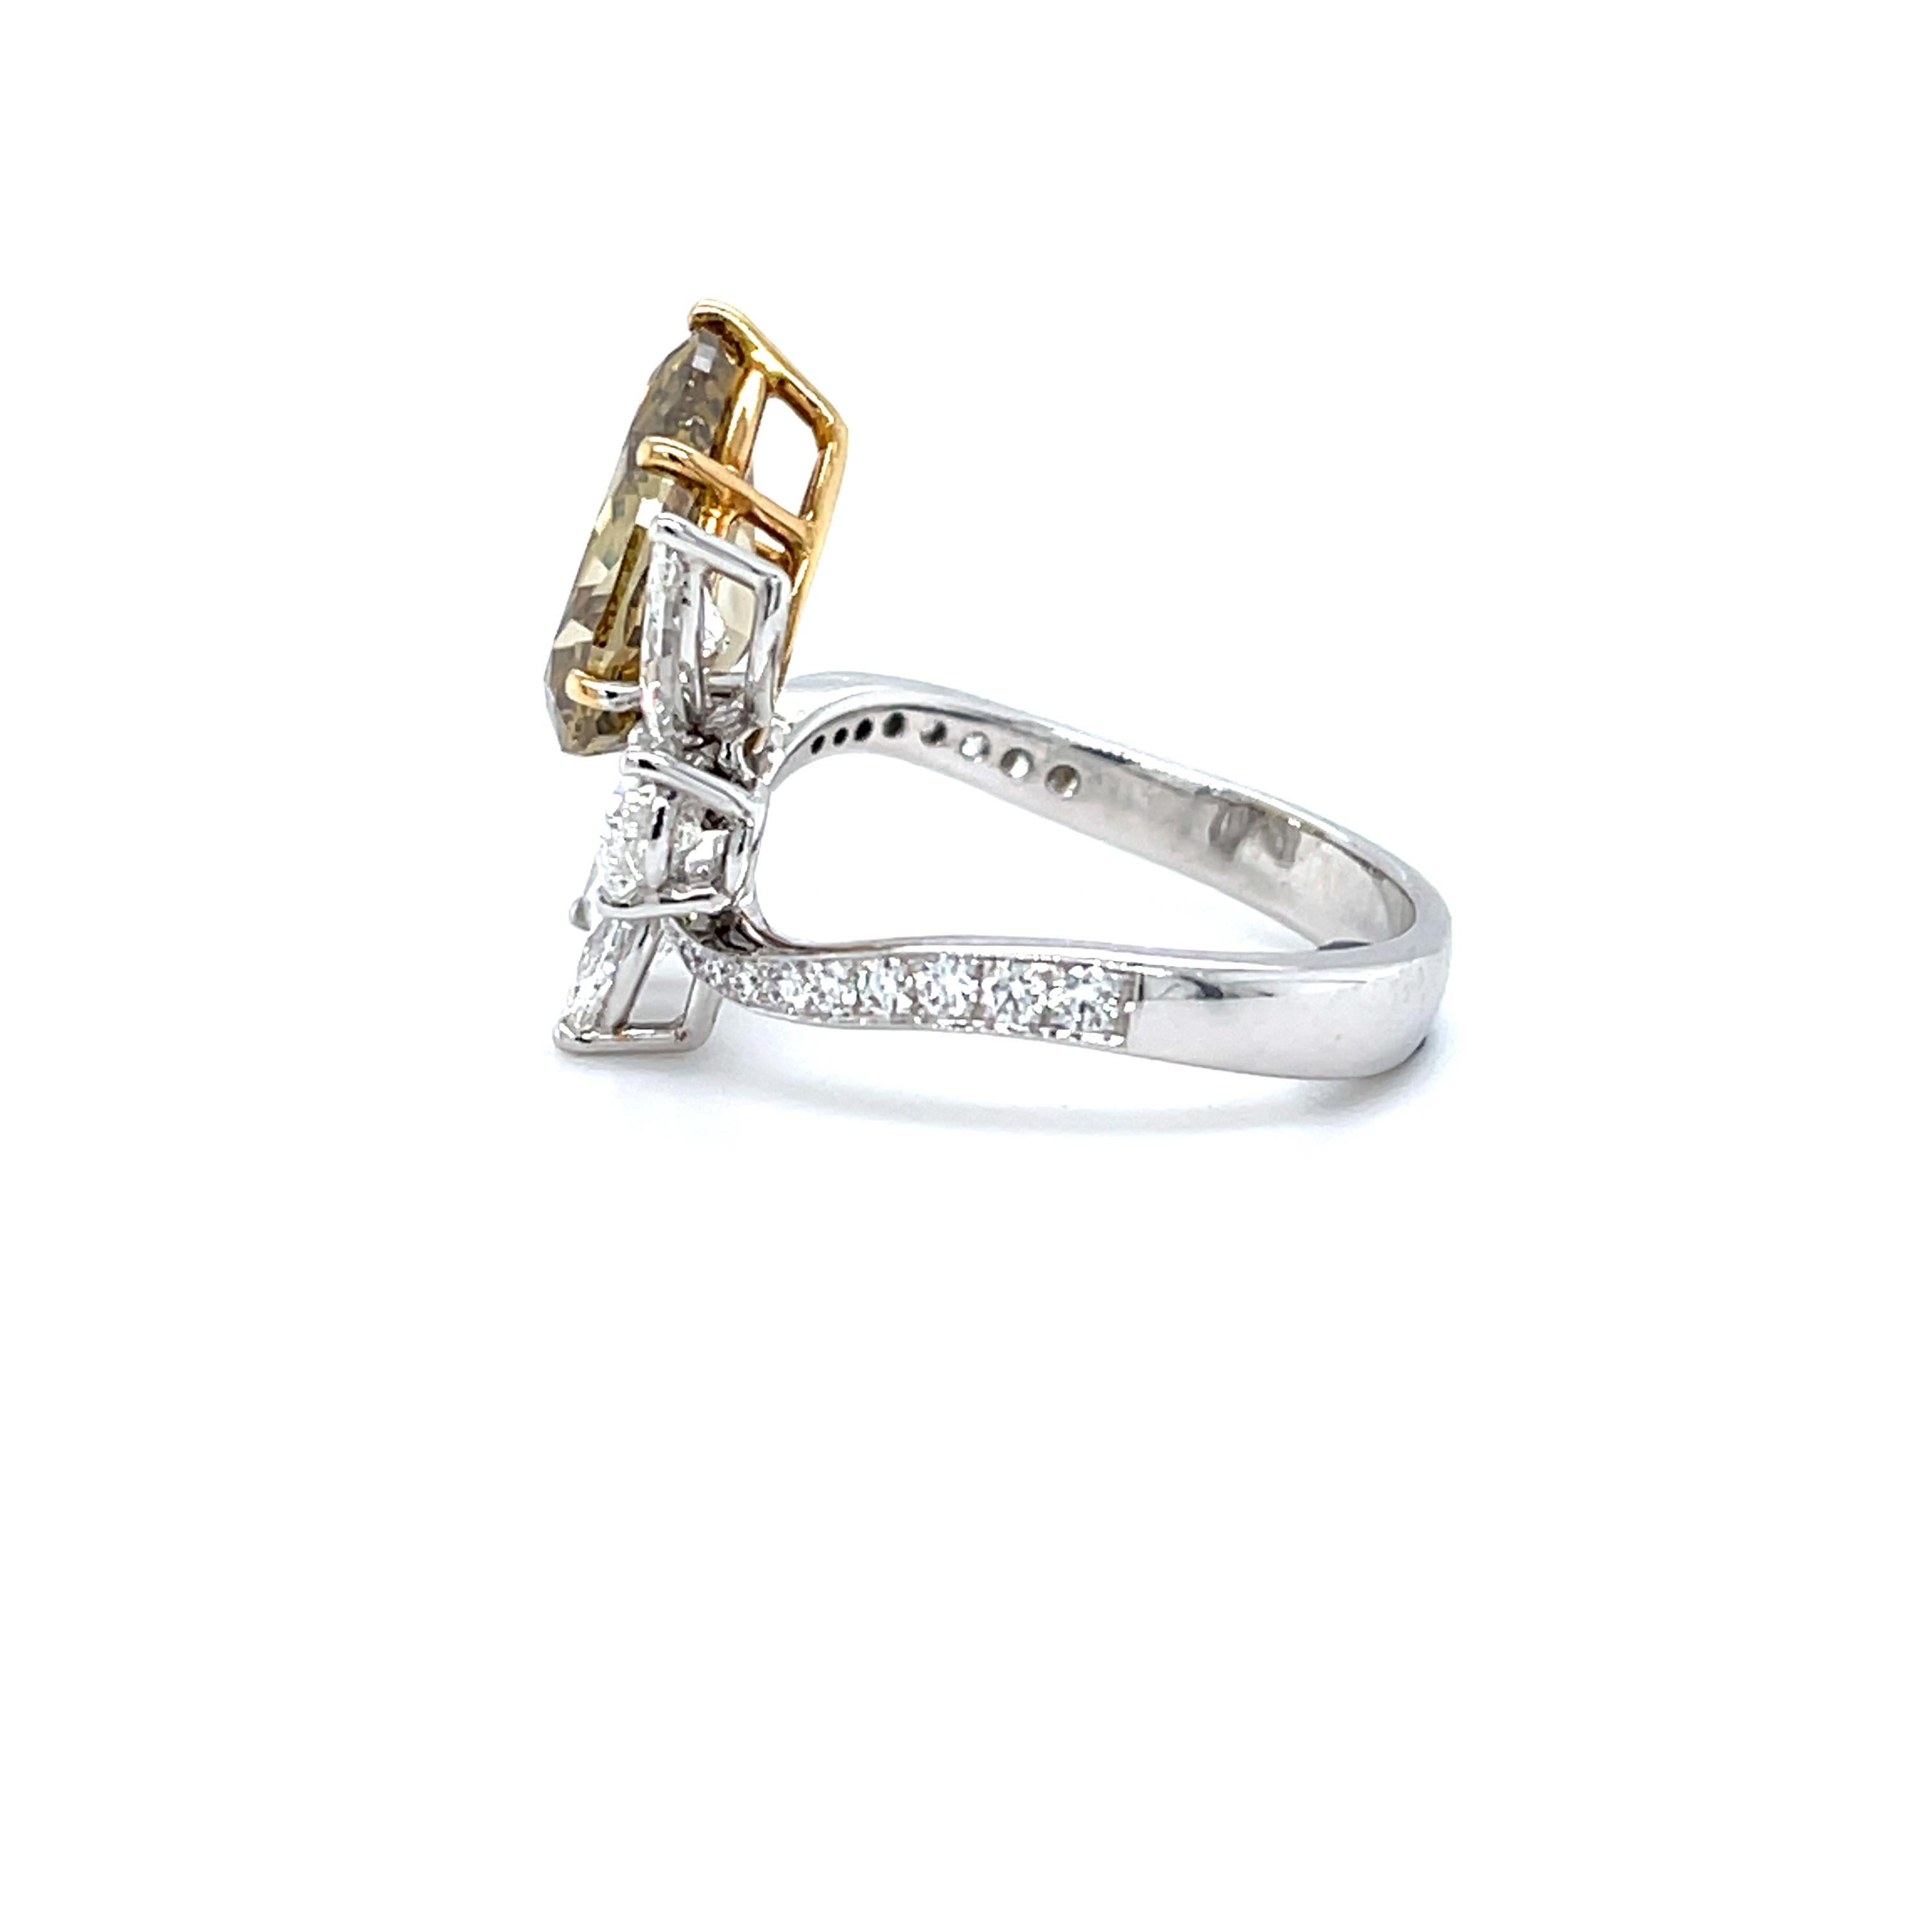 Enthüllen Sie Eleganz mit einem 3,12ct Fancy Deep Brown-Yellow Pear Diamond Ring

Ziehen Sie die Blicke auf sich mit diesem außergewöhnlichen birnenförmigen Diamantring. Das Herzstück ist ein 3,12 Karat schwerer, natürlicher, tiefbraungelber